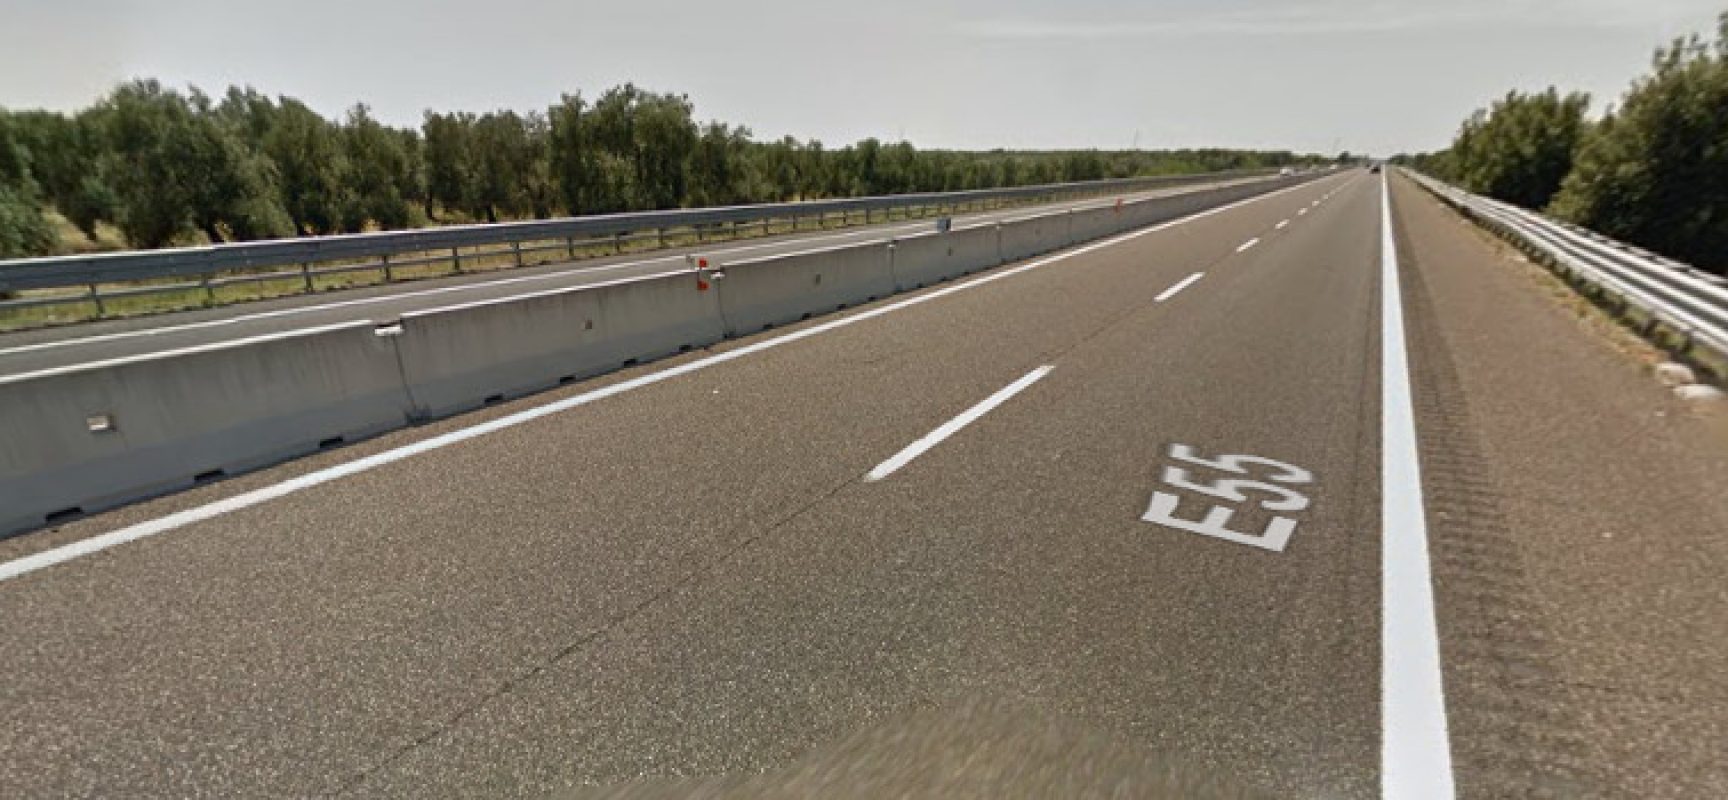 Autostrada A14 chiusa tra Molfetta e Trani per un terribile incidente, mezzo pesante si è ribaltato